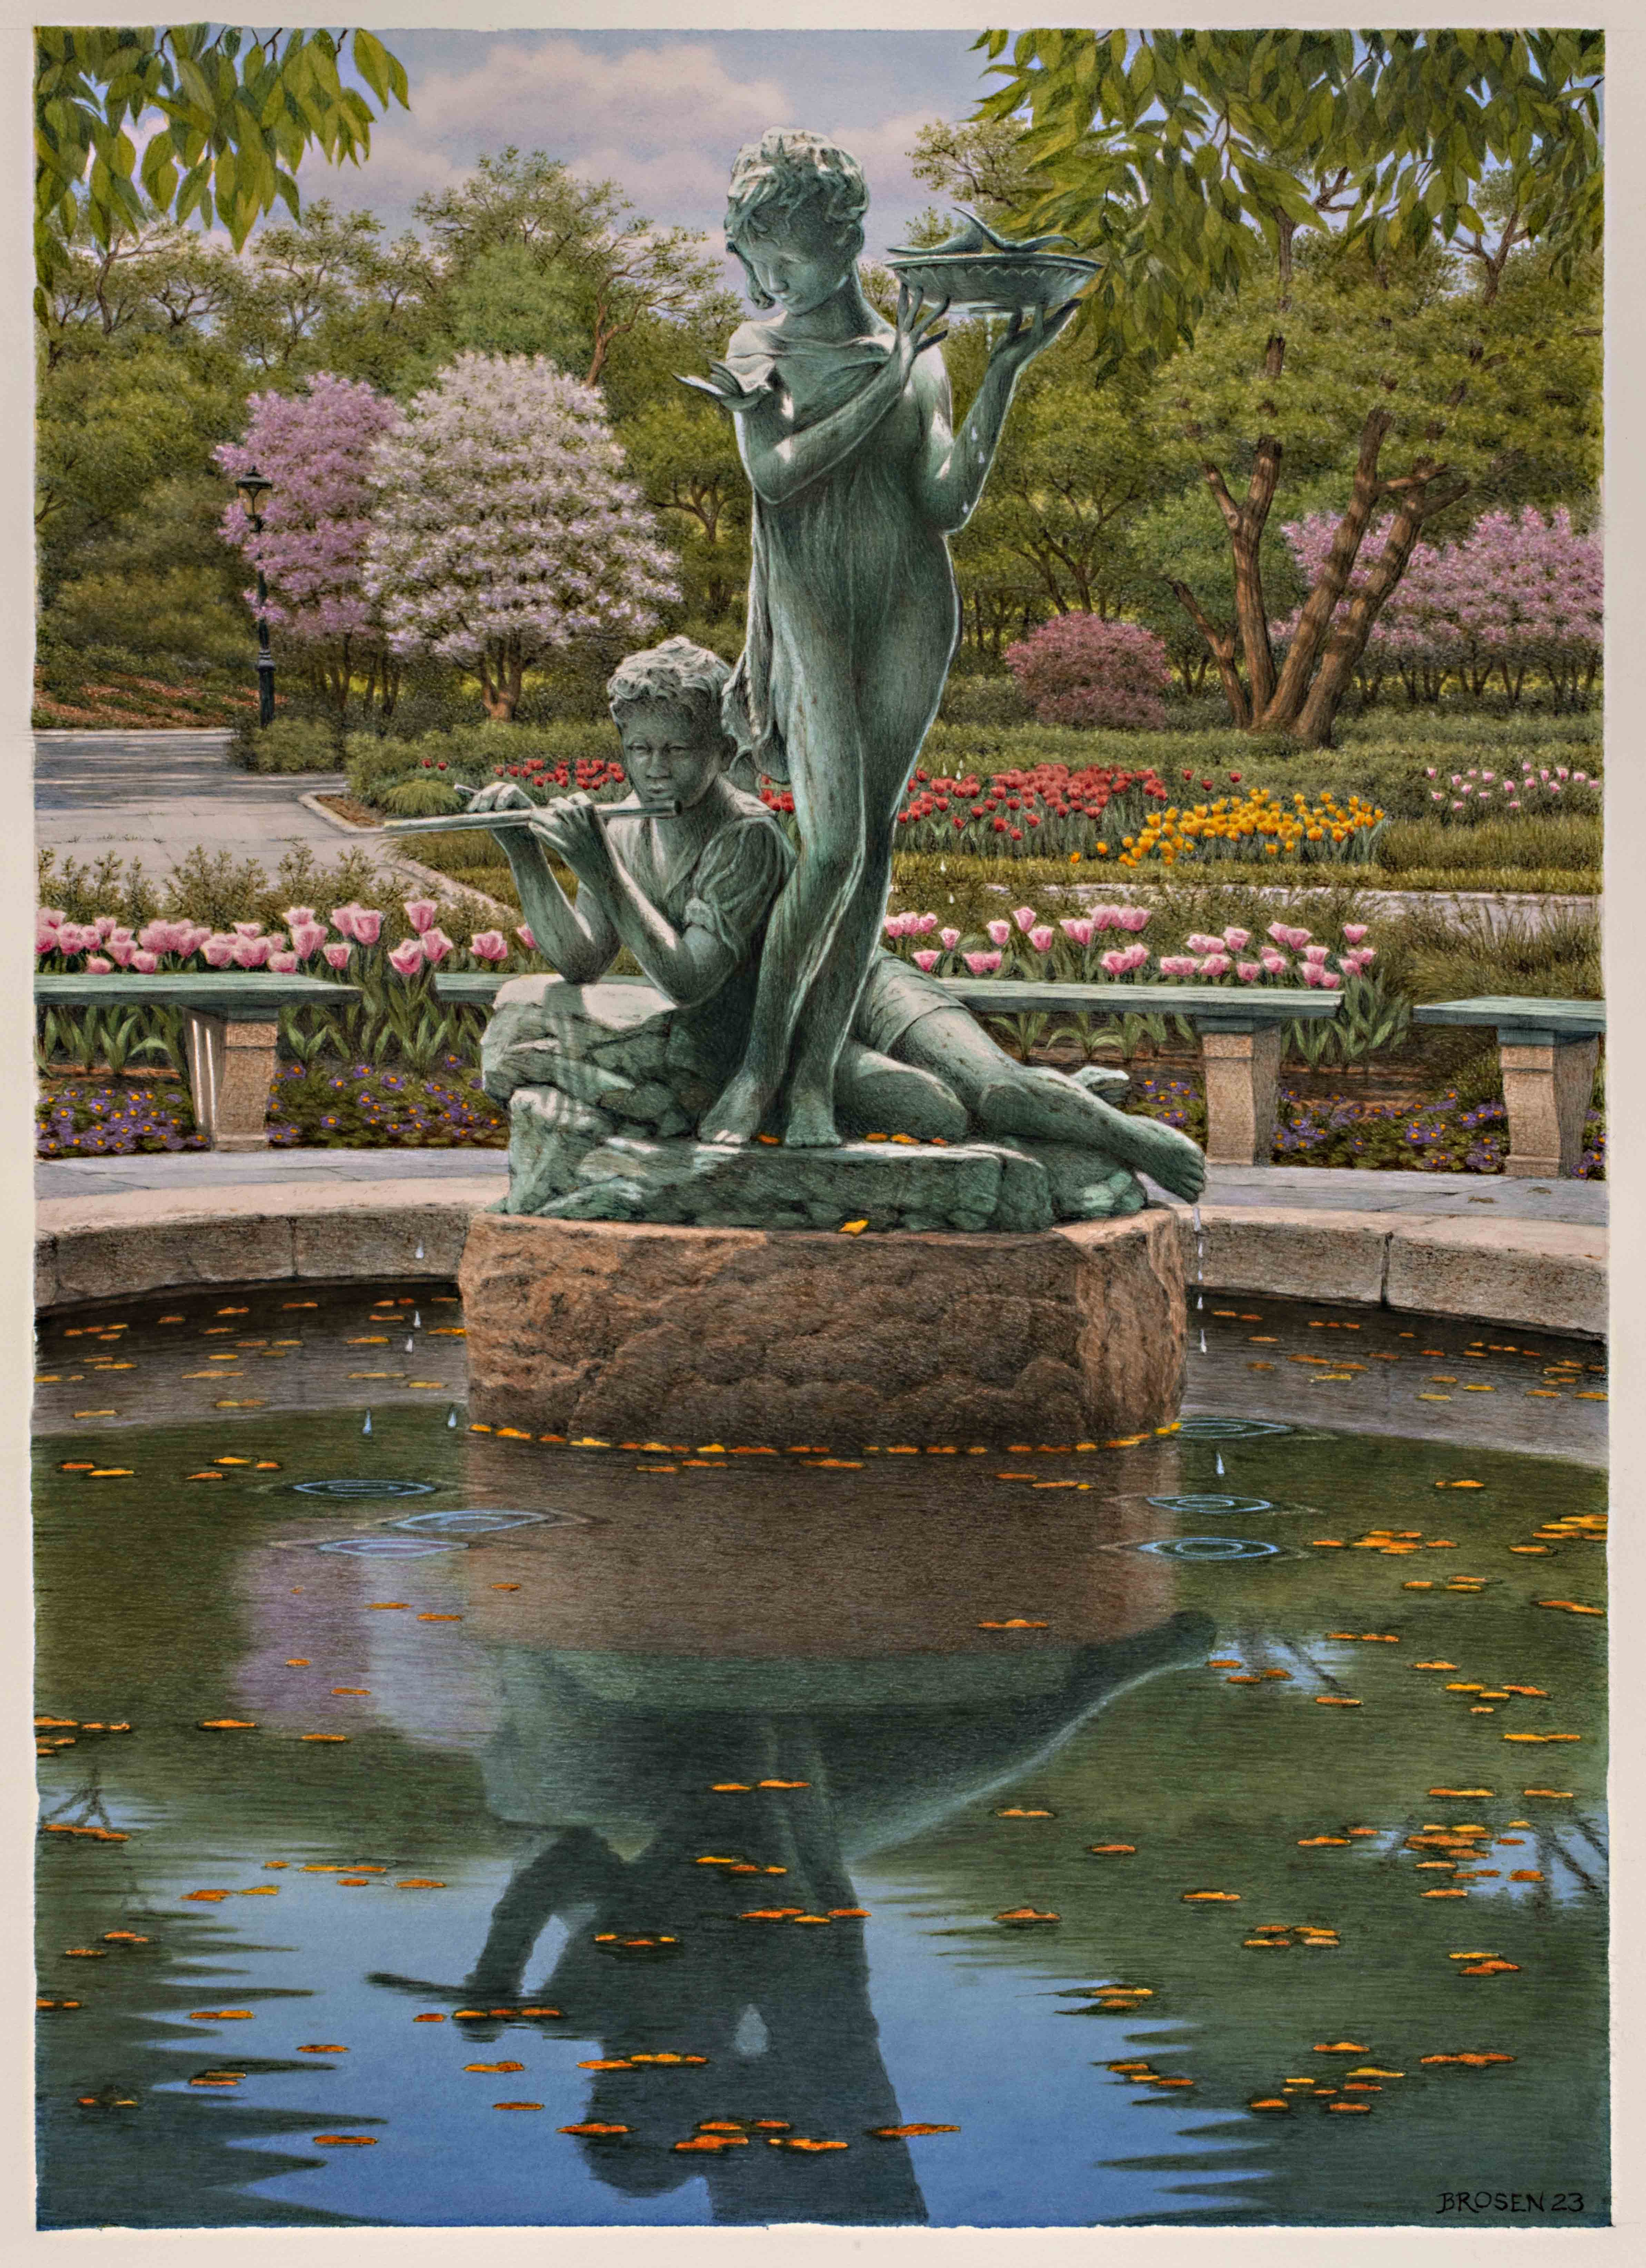 Una pintura de dos estatuas de figuras infantiles en una fuente con flores y árboles al fondo.